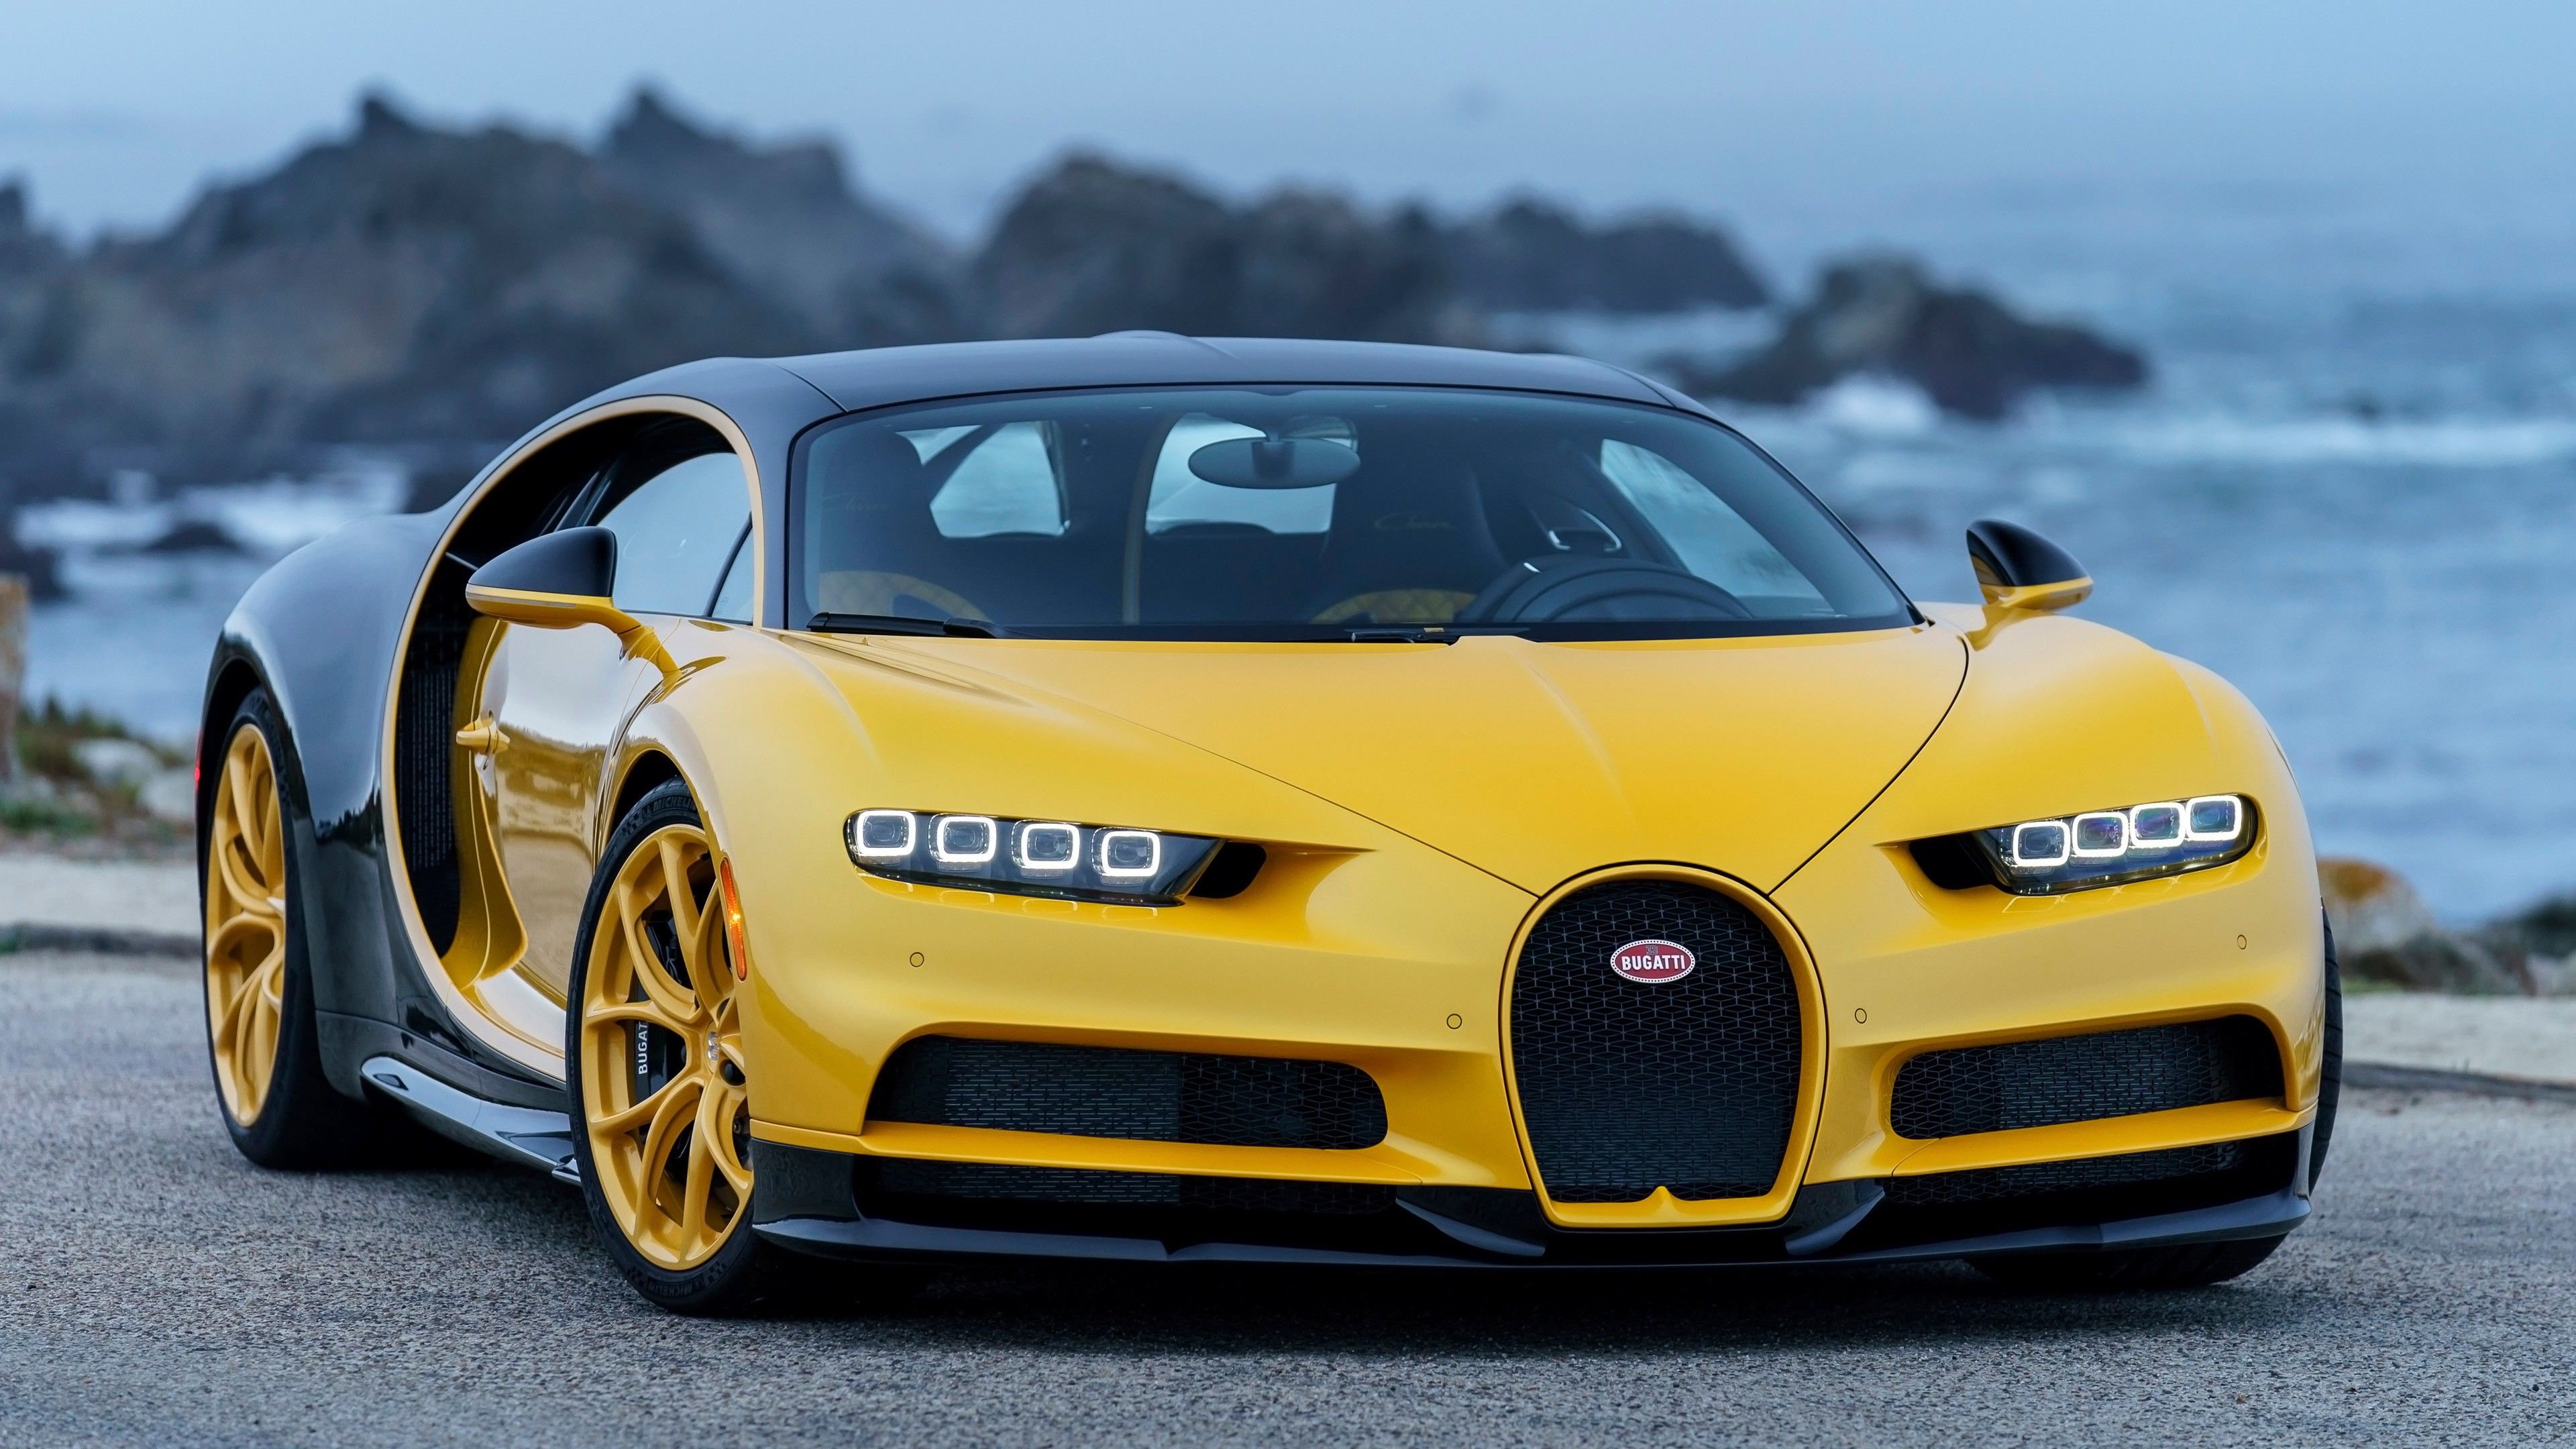 Bugatti Chiron Front , HD Wallpaper & Backgrounds